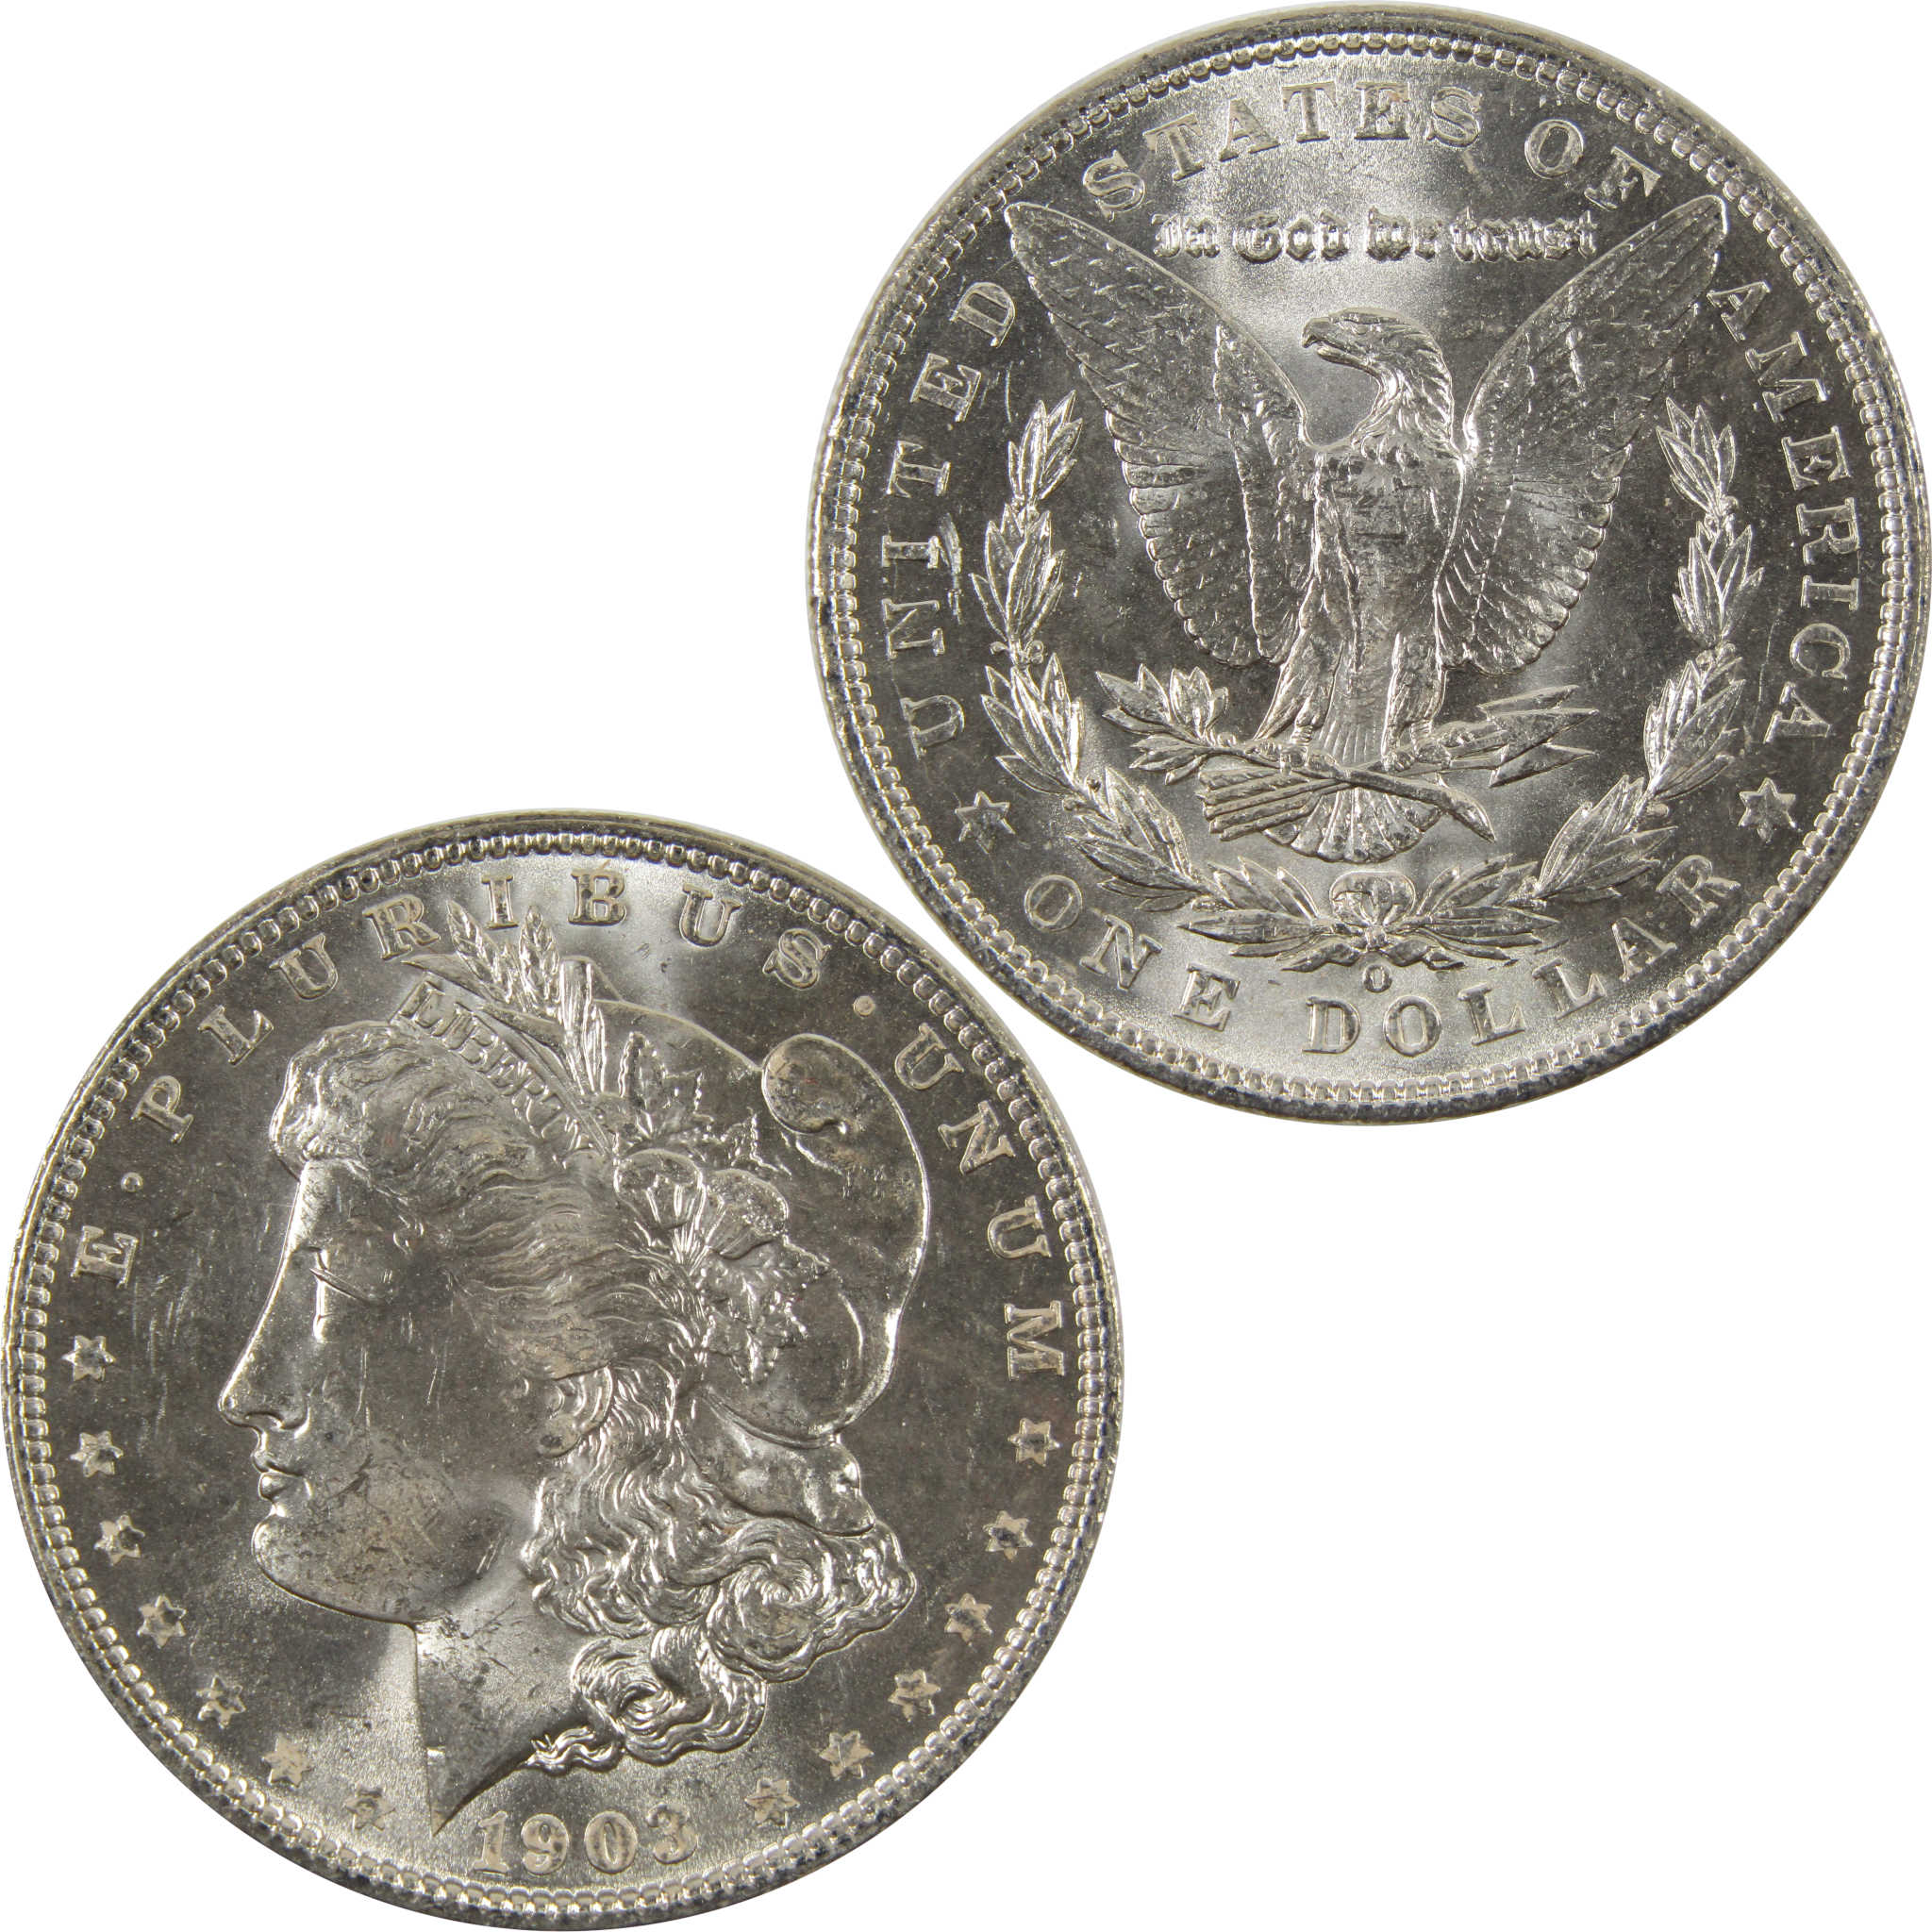 1903 O Morgan Dollar BU Choice Uncirculated 90% Silver $1 SKU:I7516 - Morgan coin - Morgan silver dollar - Morgan silver dollar for sale - Profile Coins &amp; Collectibles